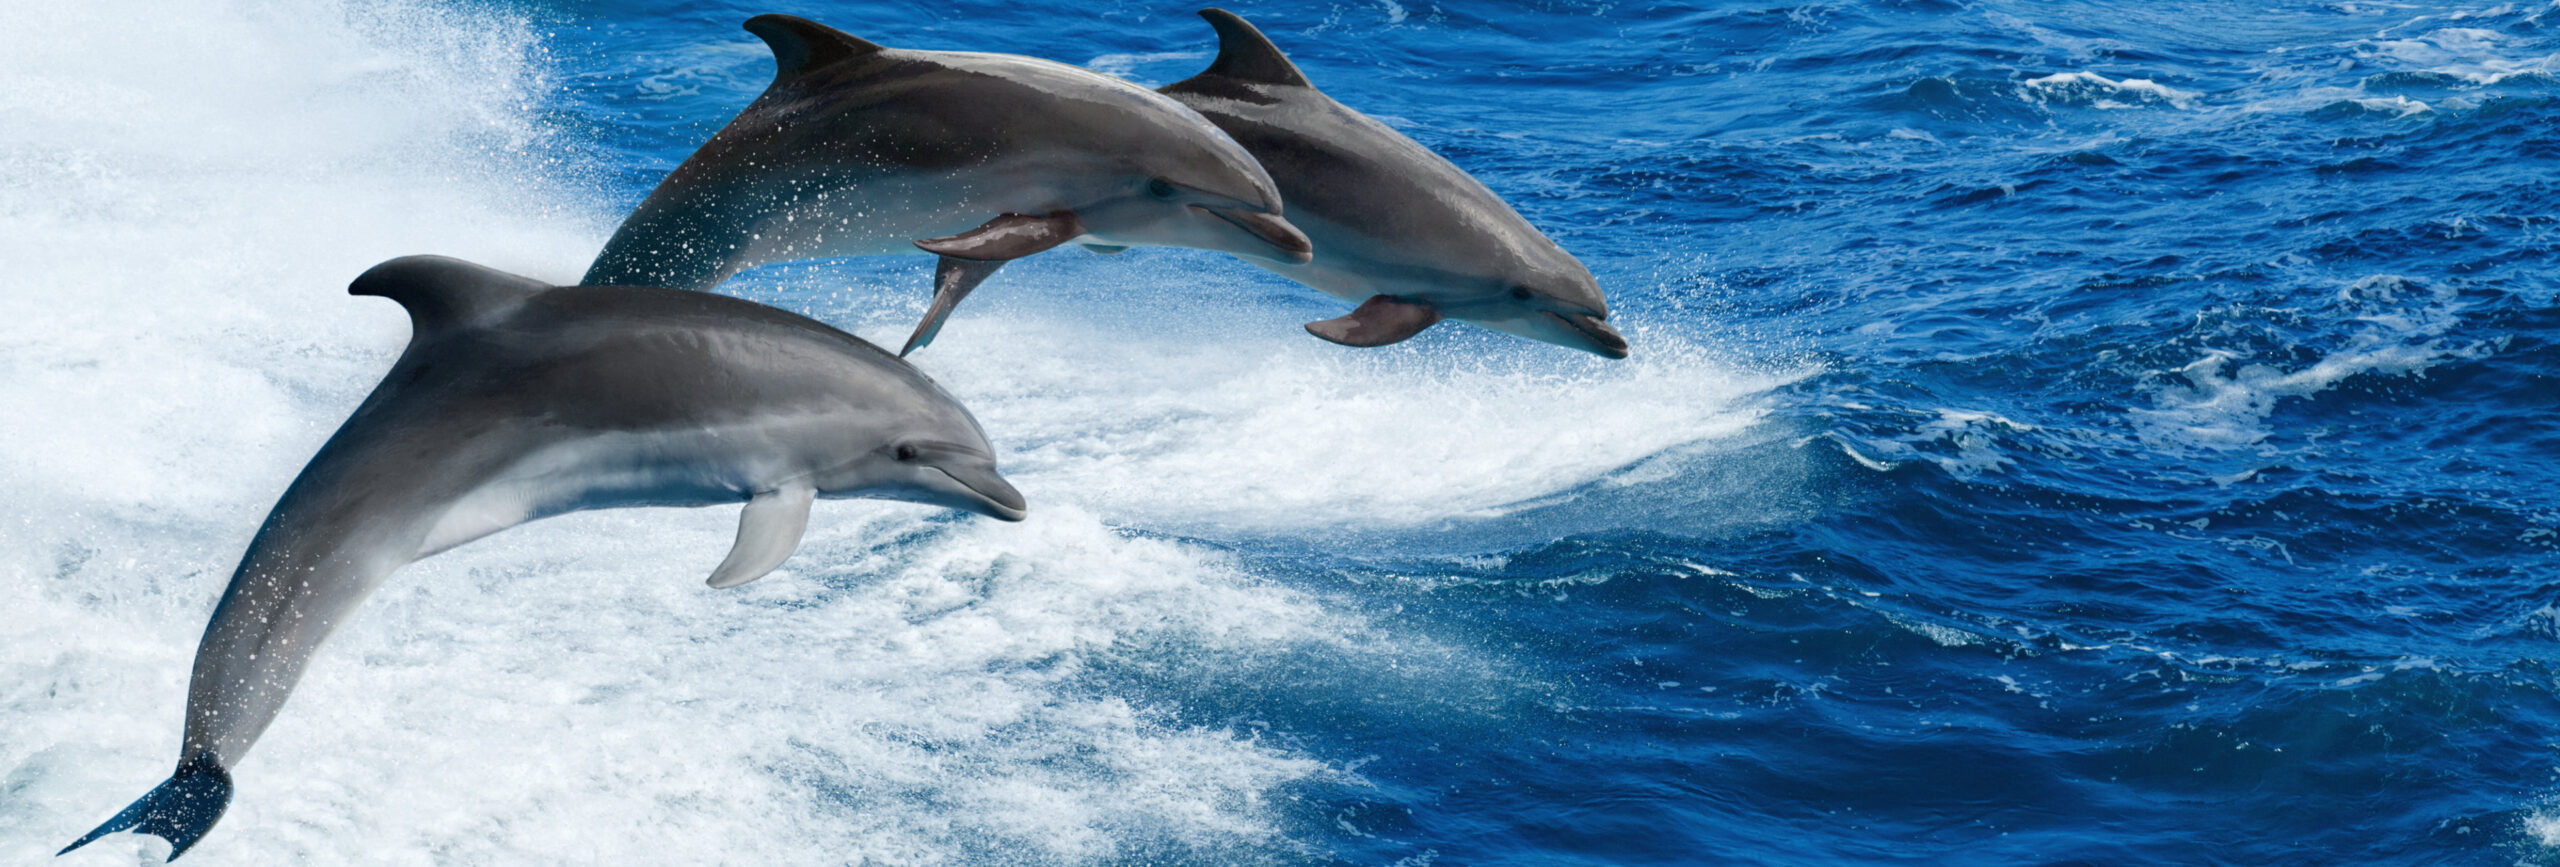 Drei springende Delfine auf hoher See. - insysta